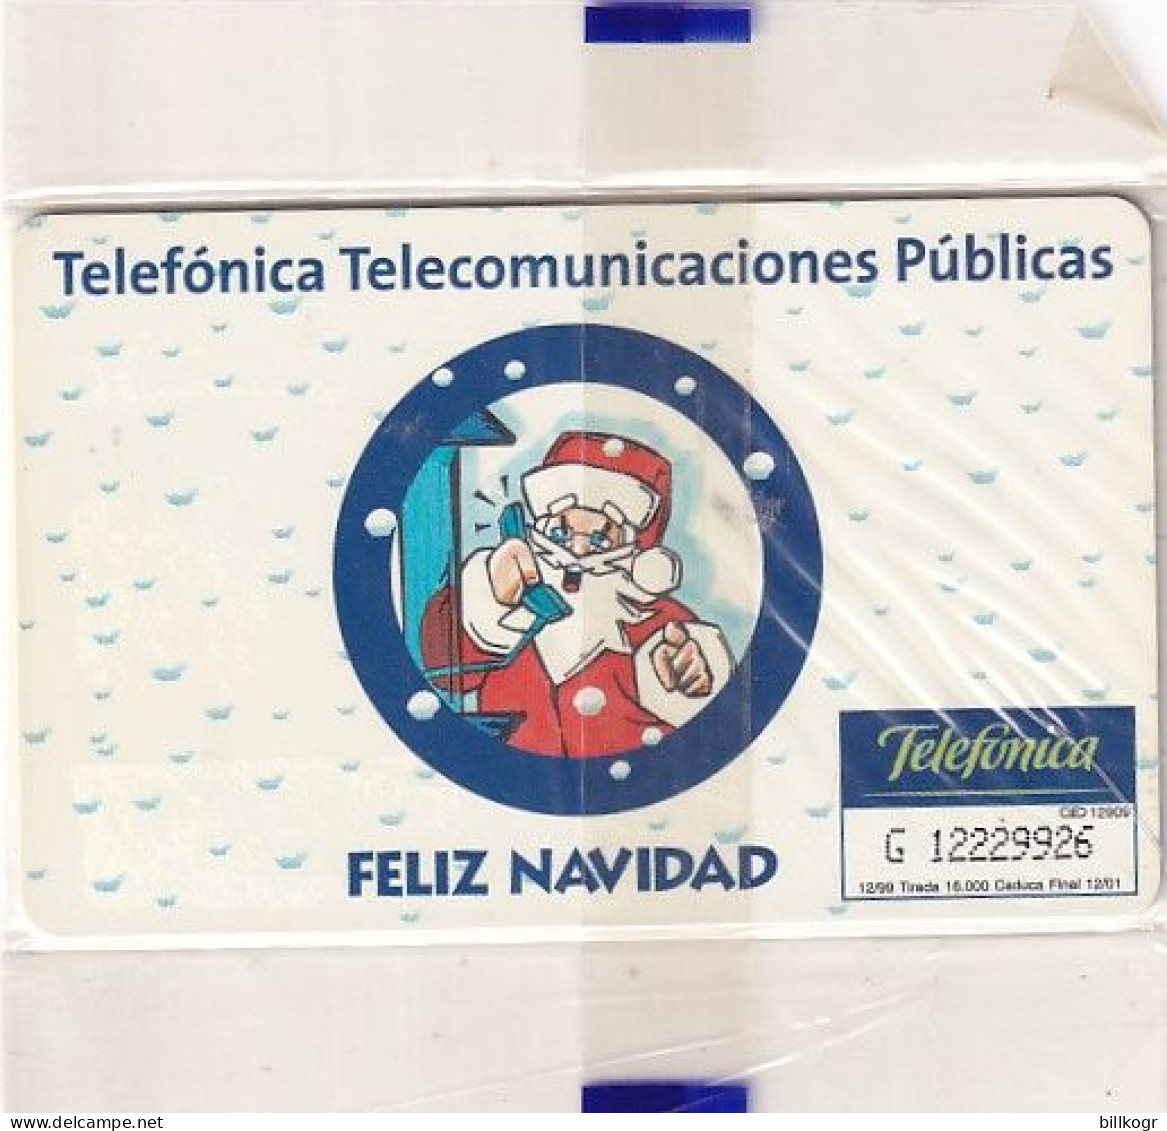 SPAIN - Christmas, Santa Claus, Tirage 16000, 12/99, Mint - Emissions Privées